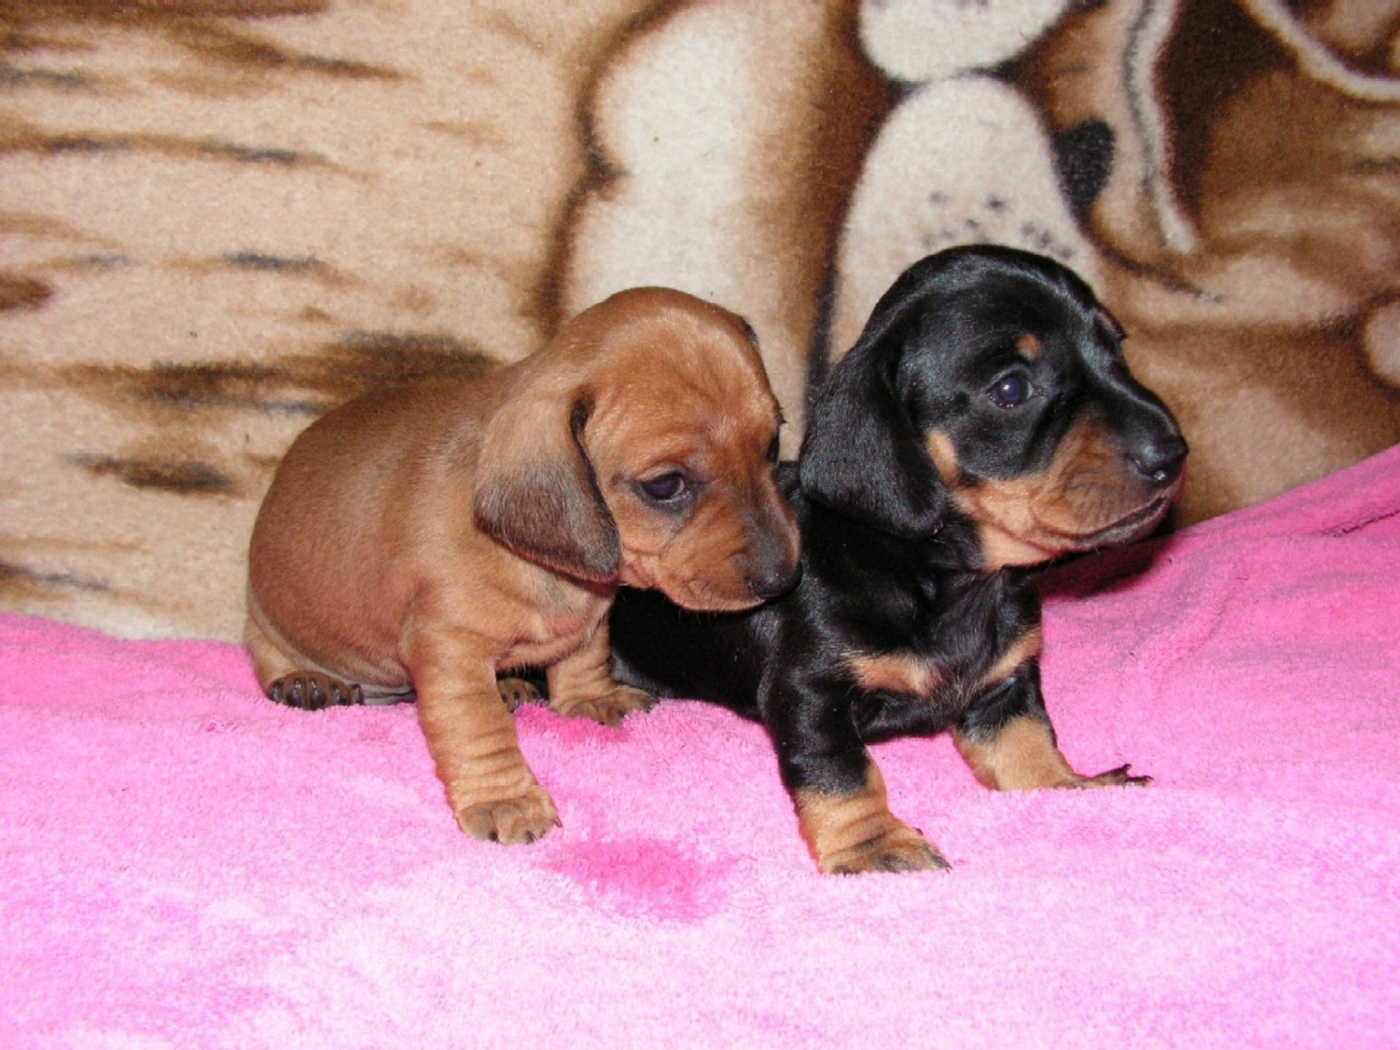 Two dachshund puppy